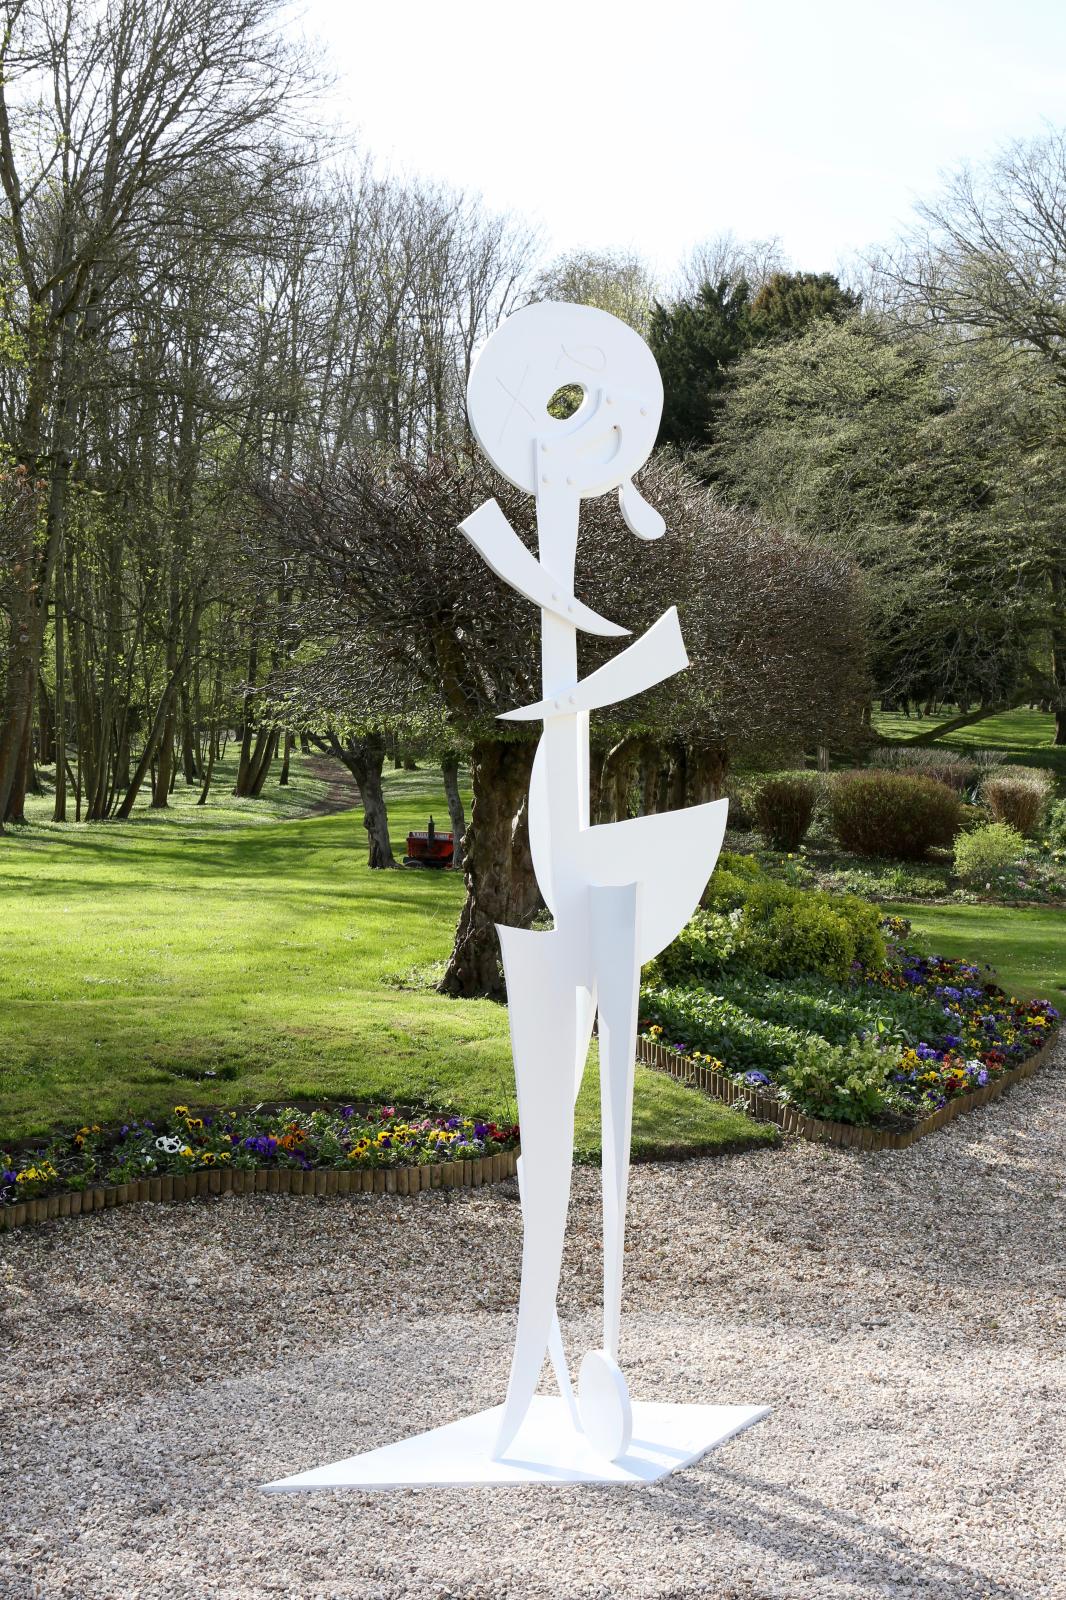 Une sculpture d’Aaron Curry dans le parc. Bernard Ruiz-Picasso et son épouse Almine souhaitent faire de Boisgeloup un lieu ouvert à l’art contemporain